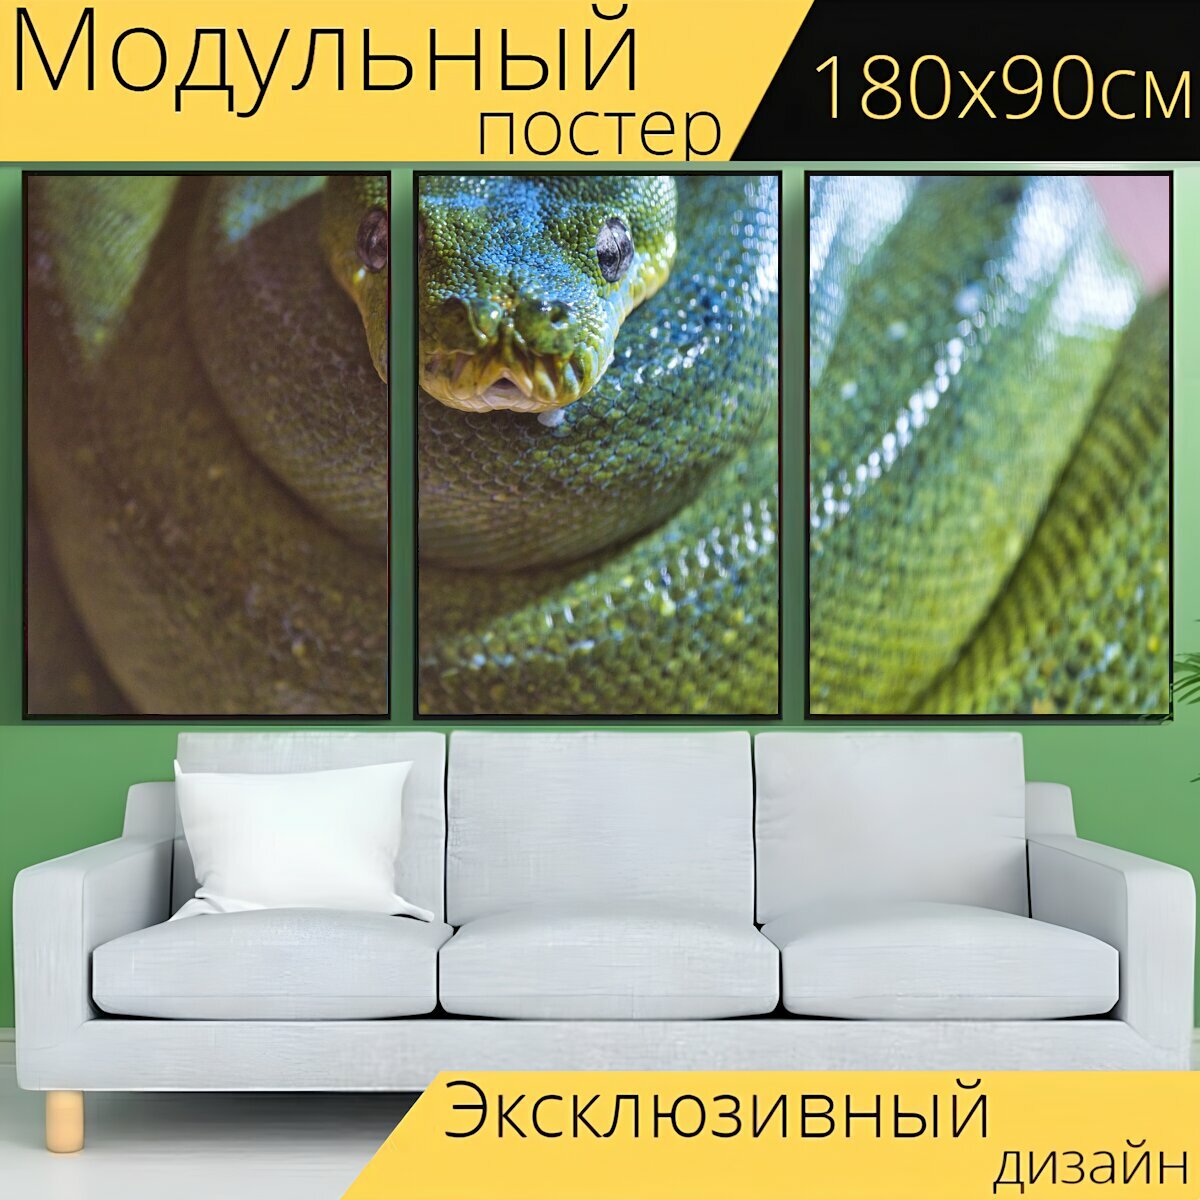 Модульный постер "Змея, питон, рептилия" 180 x 90 см. для интерьера